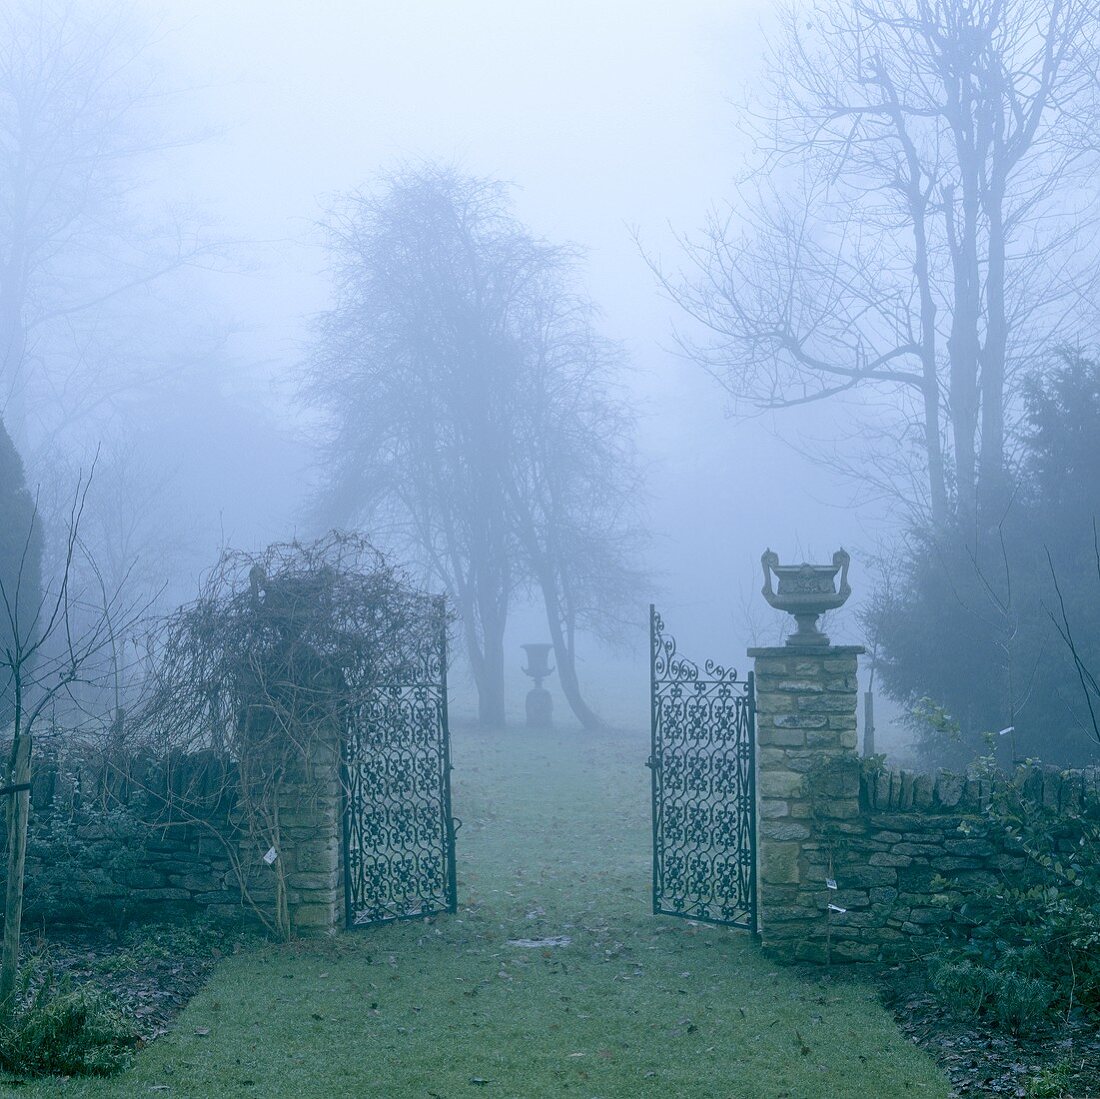 Offenes Metalltor vor englischen Garten mit nebliger Stimmung